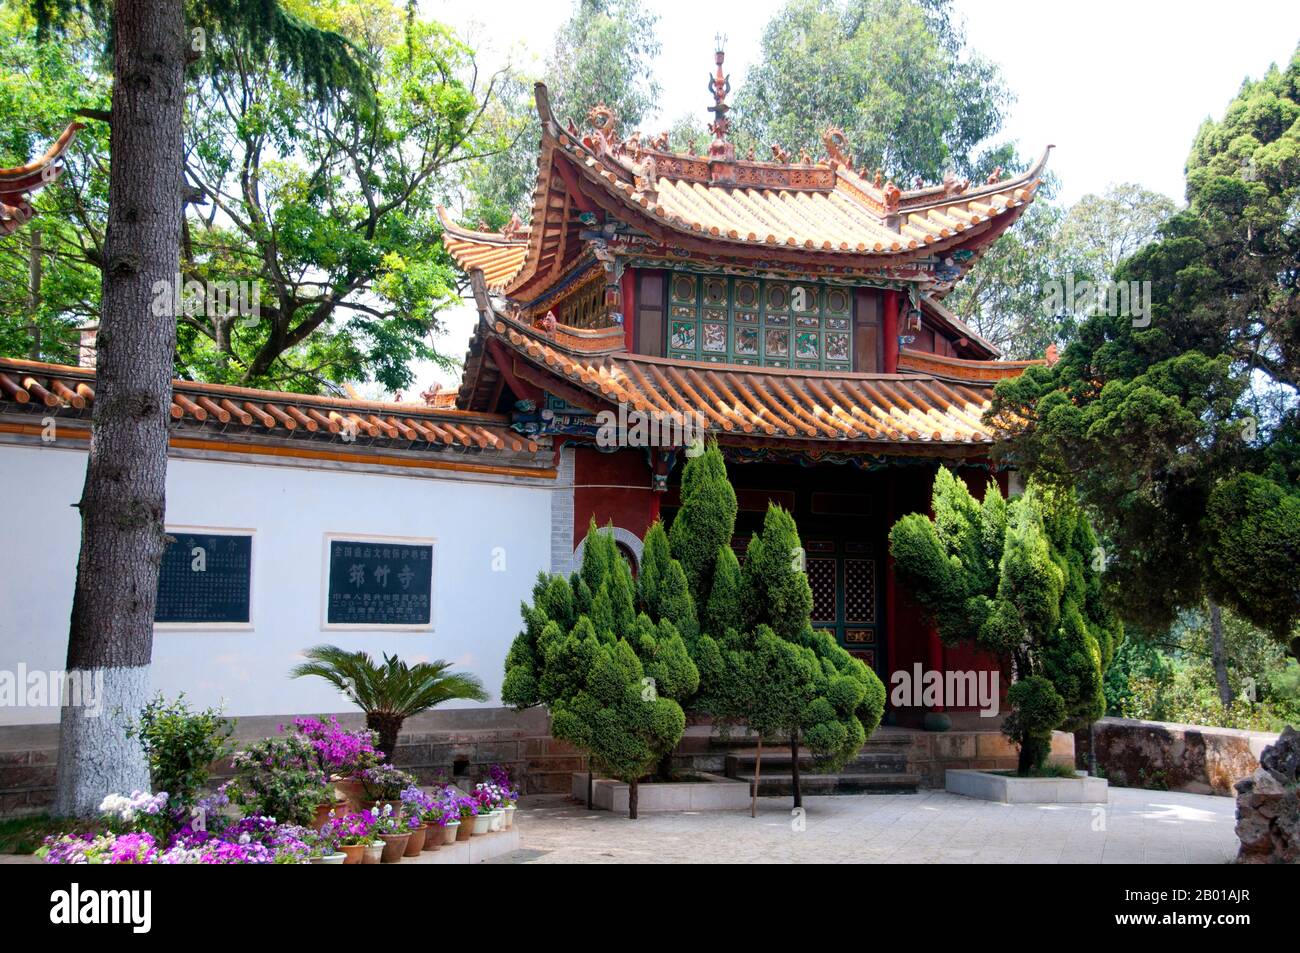 Chine: Entrée à Qiongzhu si (temple de bambou), au nord-ouest de Kunming, province du Yunnan. Qiongzhu si (Temple Bamboo) a été construit à l'origine pendant la dynastie Tang (618-907), mais a été correctement établi pendant la dynastie Yuan (1271-1368) comme le premier temple dédié au bouddhisme zen dans le Yunnan. Le temple est célèbre pour ses 500 arhats peints créés sous le règne de l'empereur Qing Guangxu (1875-1909) par le sculpteur Li Guangxiu. Banque D'Images